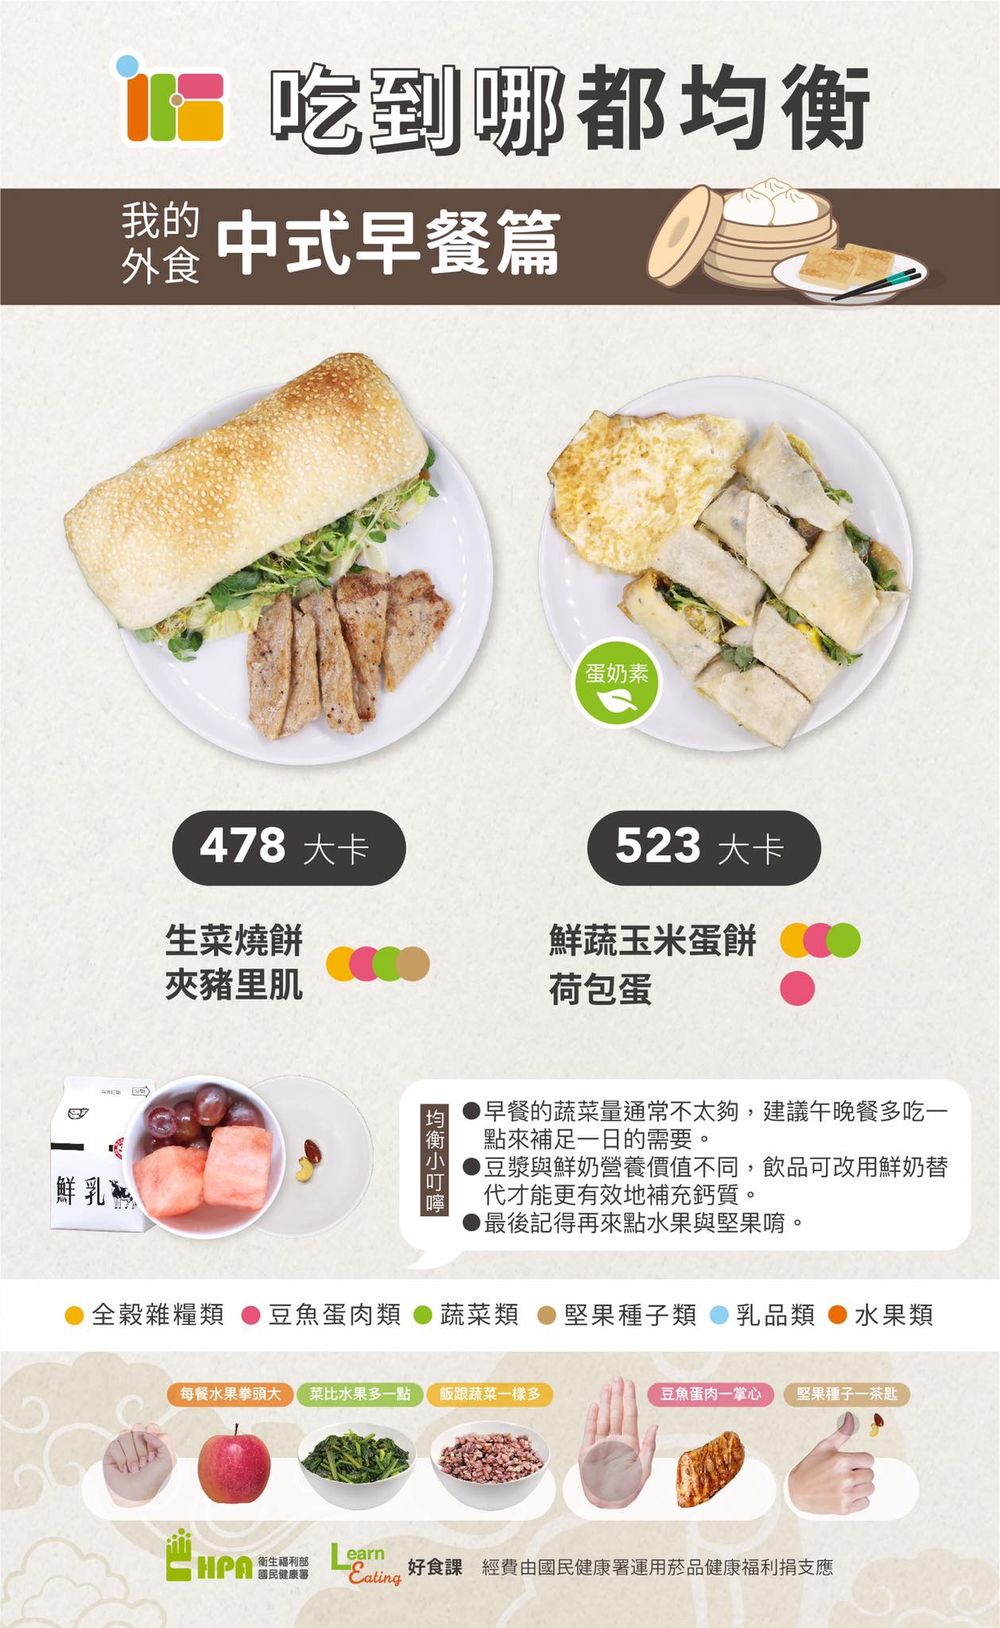 中式早餐,均衡飲食,油條,蛋白質,蔬菜